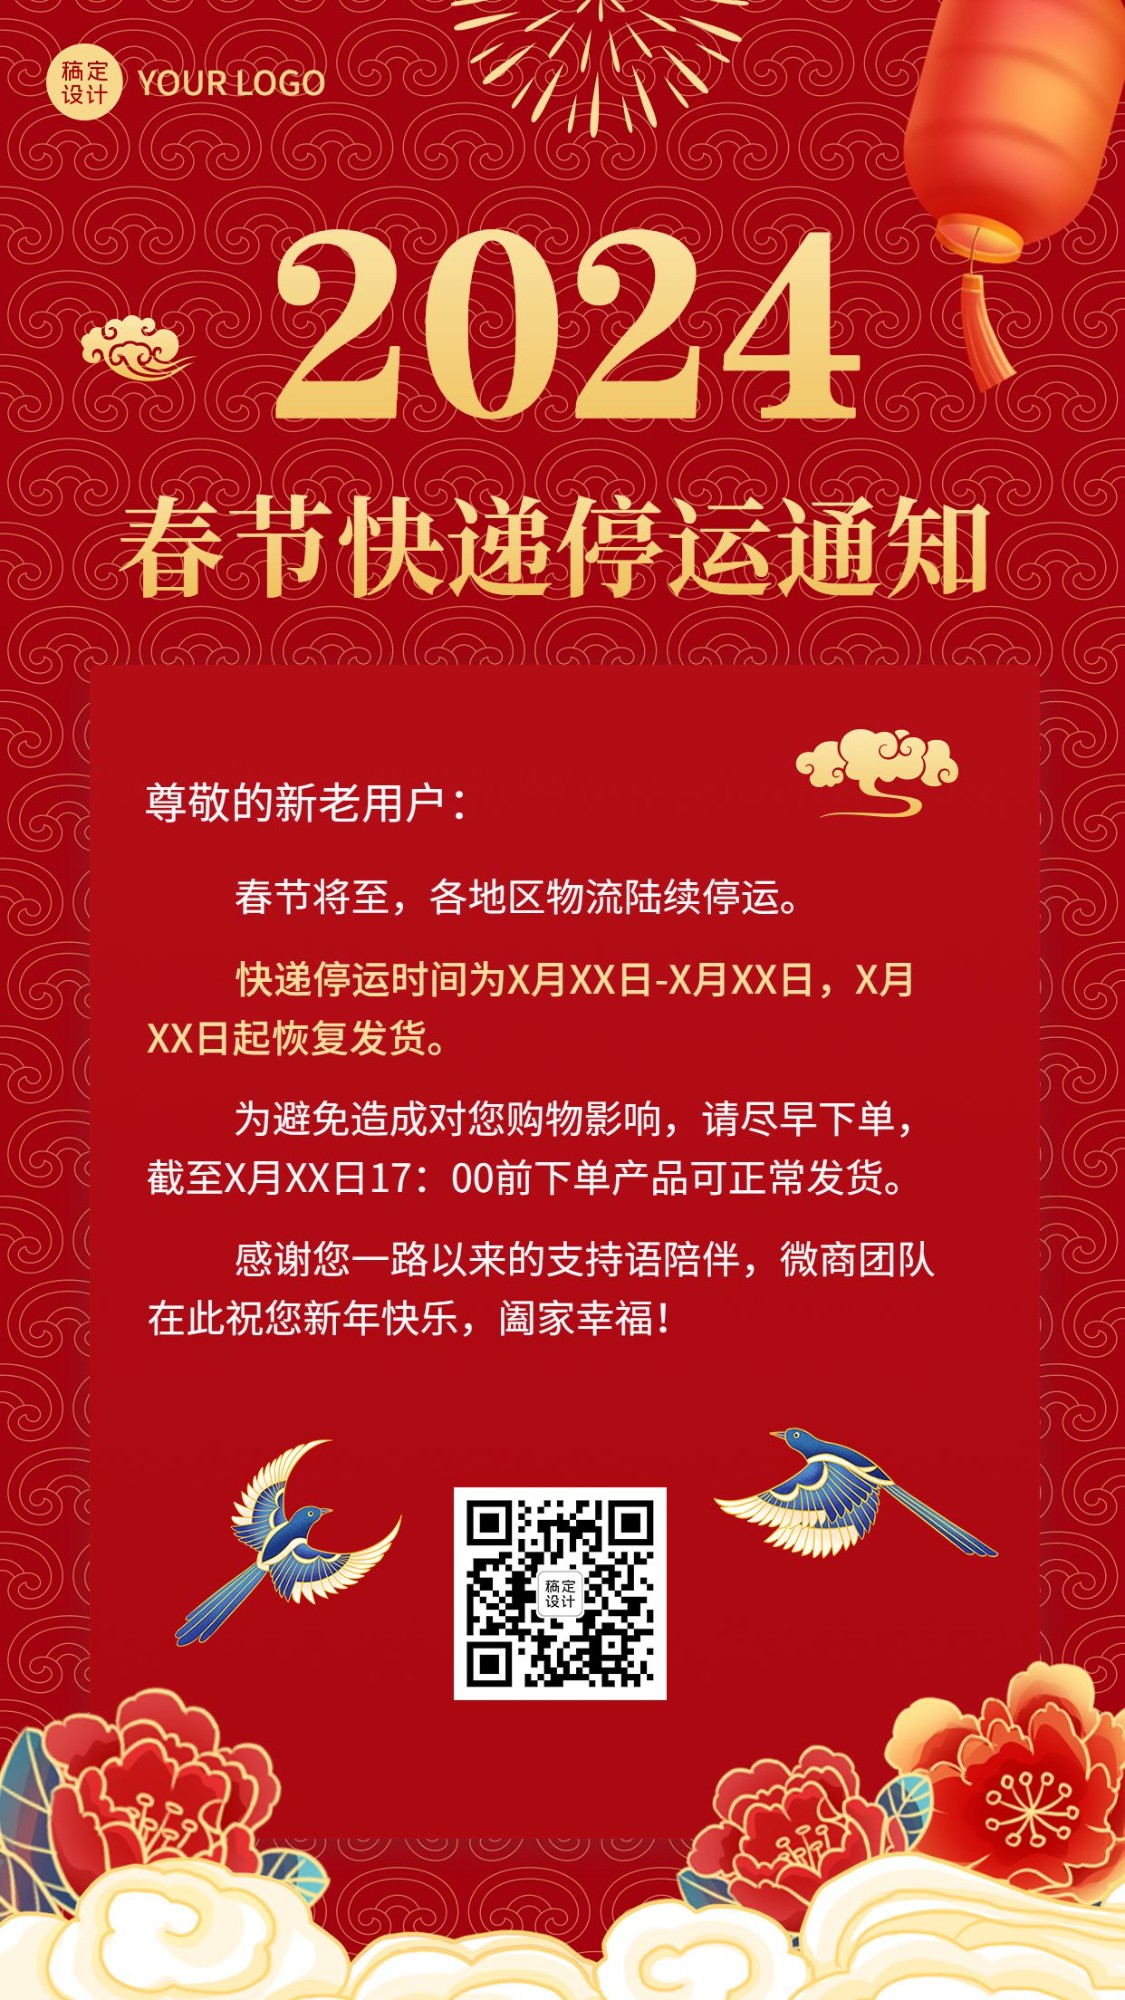 春节微商快递物流停运通知公告喜庆中国风手机海报预览效果